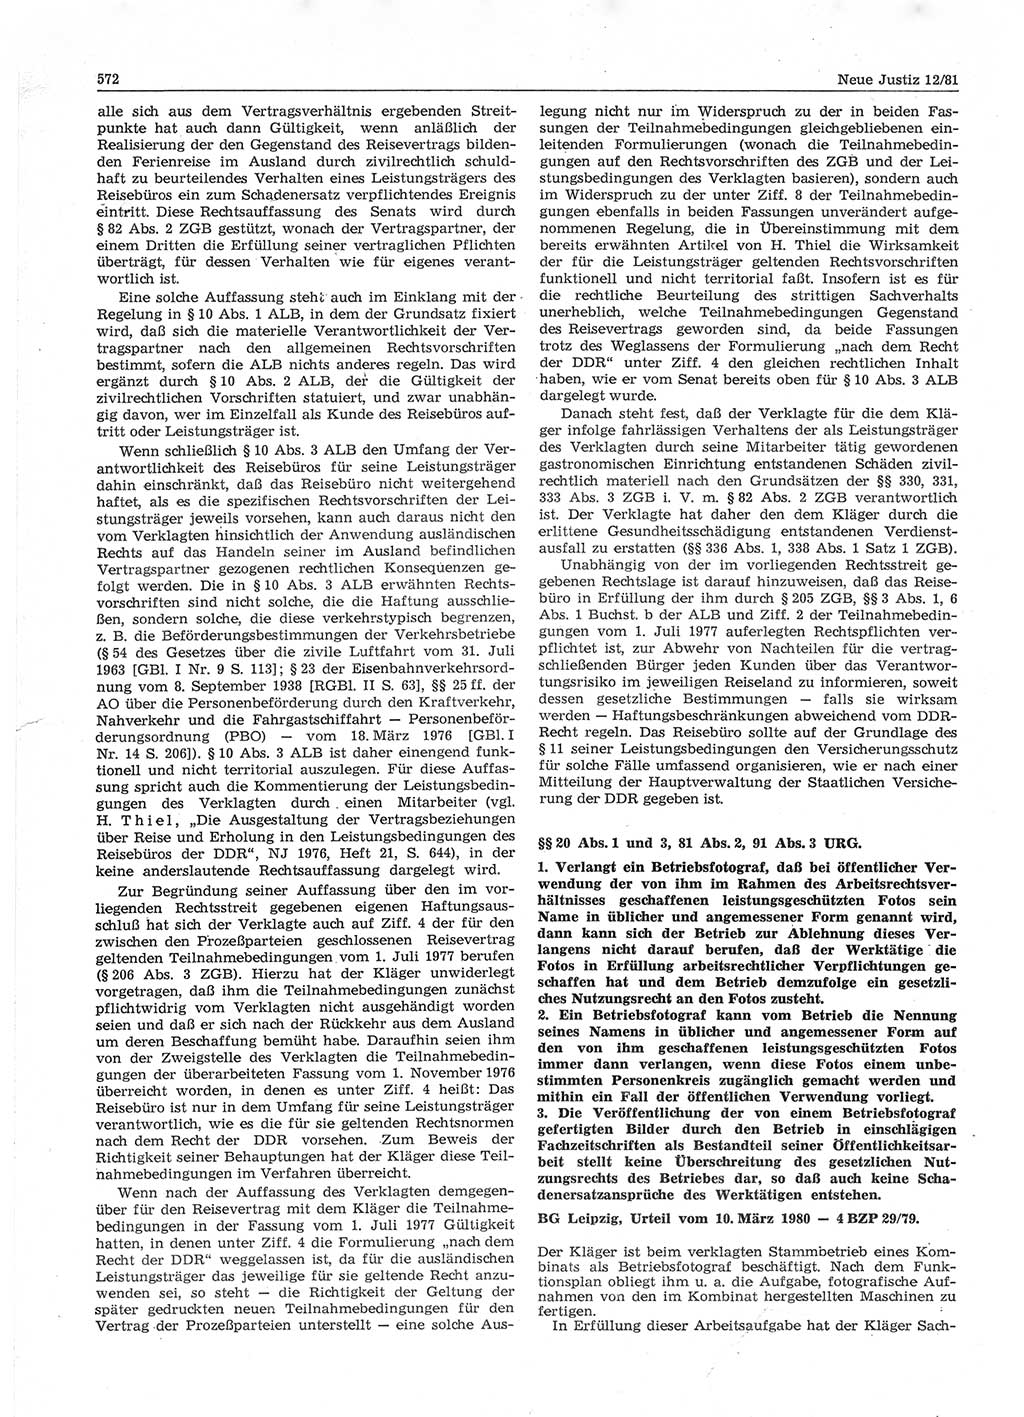 Neue Justiz (NJ), Zeitschrift für sozialistisches Recht und Gesetzlichkeit [Deutsche Demokratische Republik (DDR)], 35. Jahrgang 1981, Seite 572 (NJ DDR 1981, S. 572)